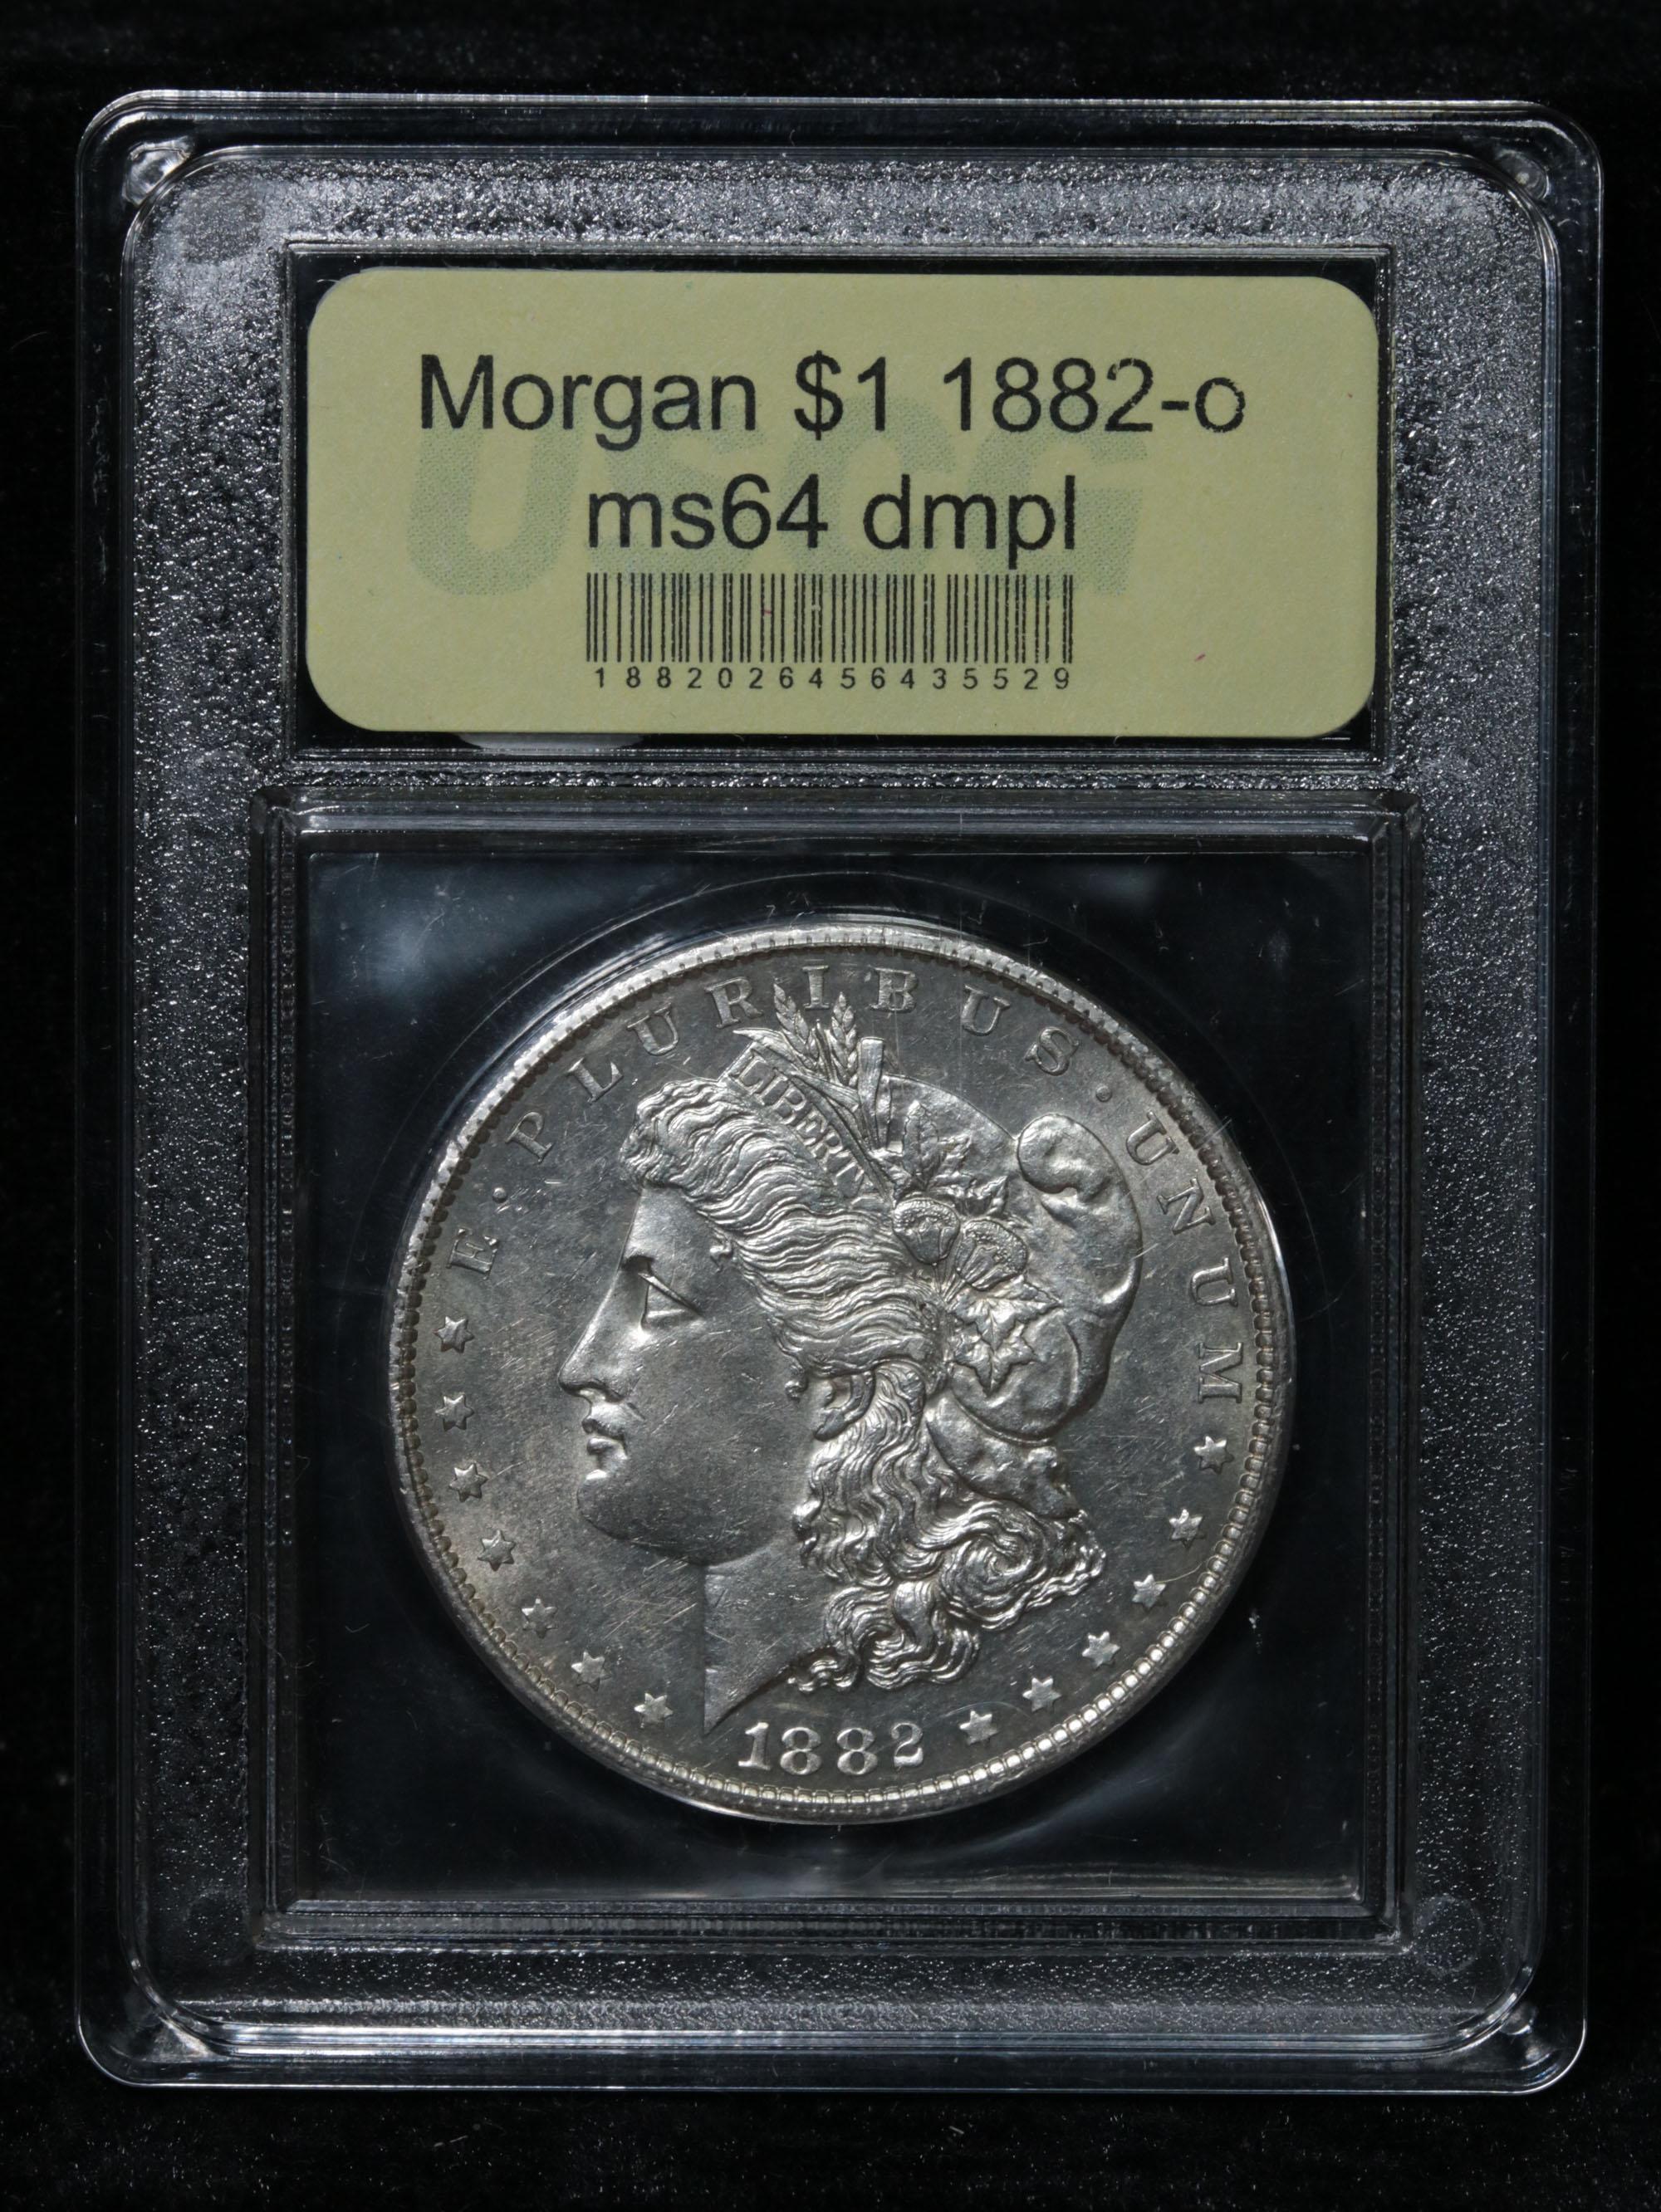 ***Auction Highlight*** 1882-o Morgan Dollar $1 Graded Choice Unc DMPL By USCG (fc)